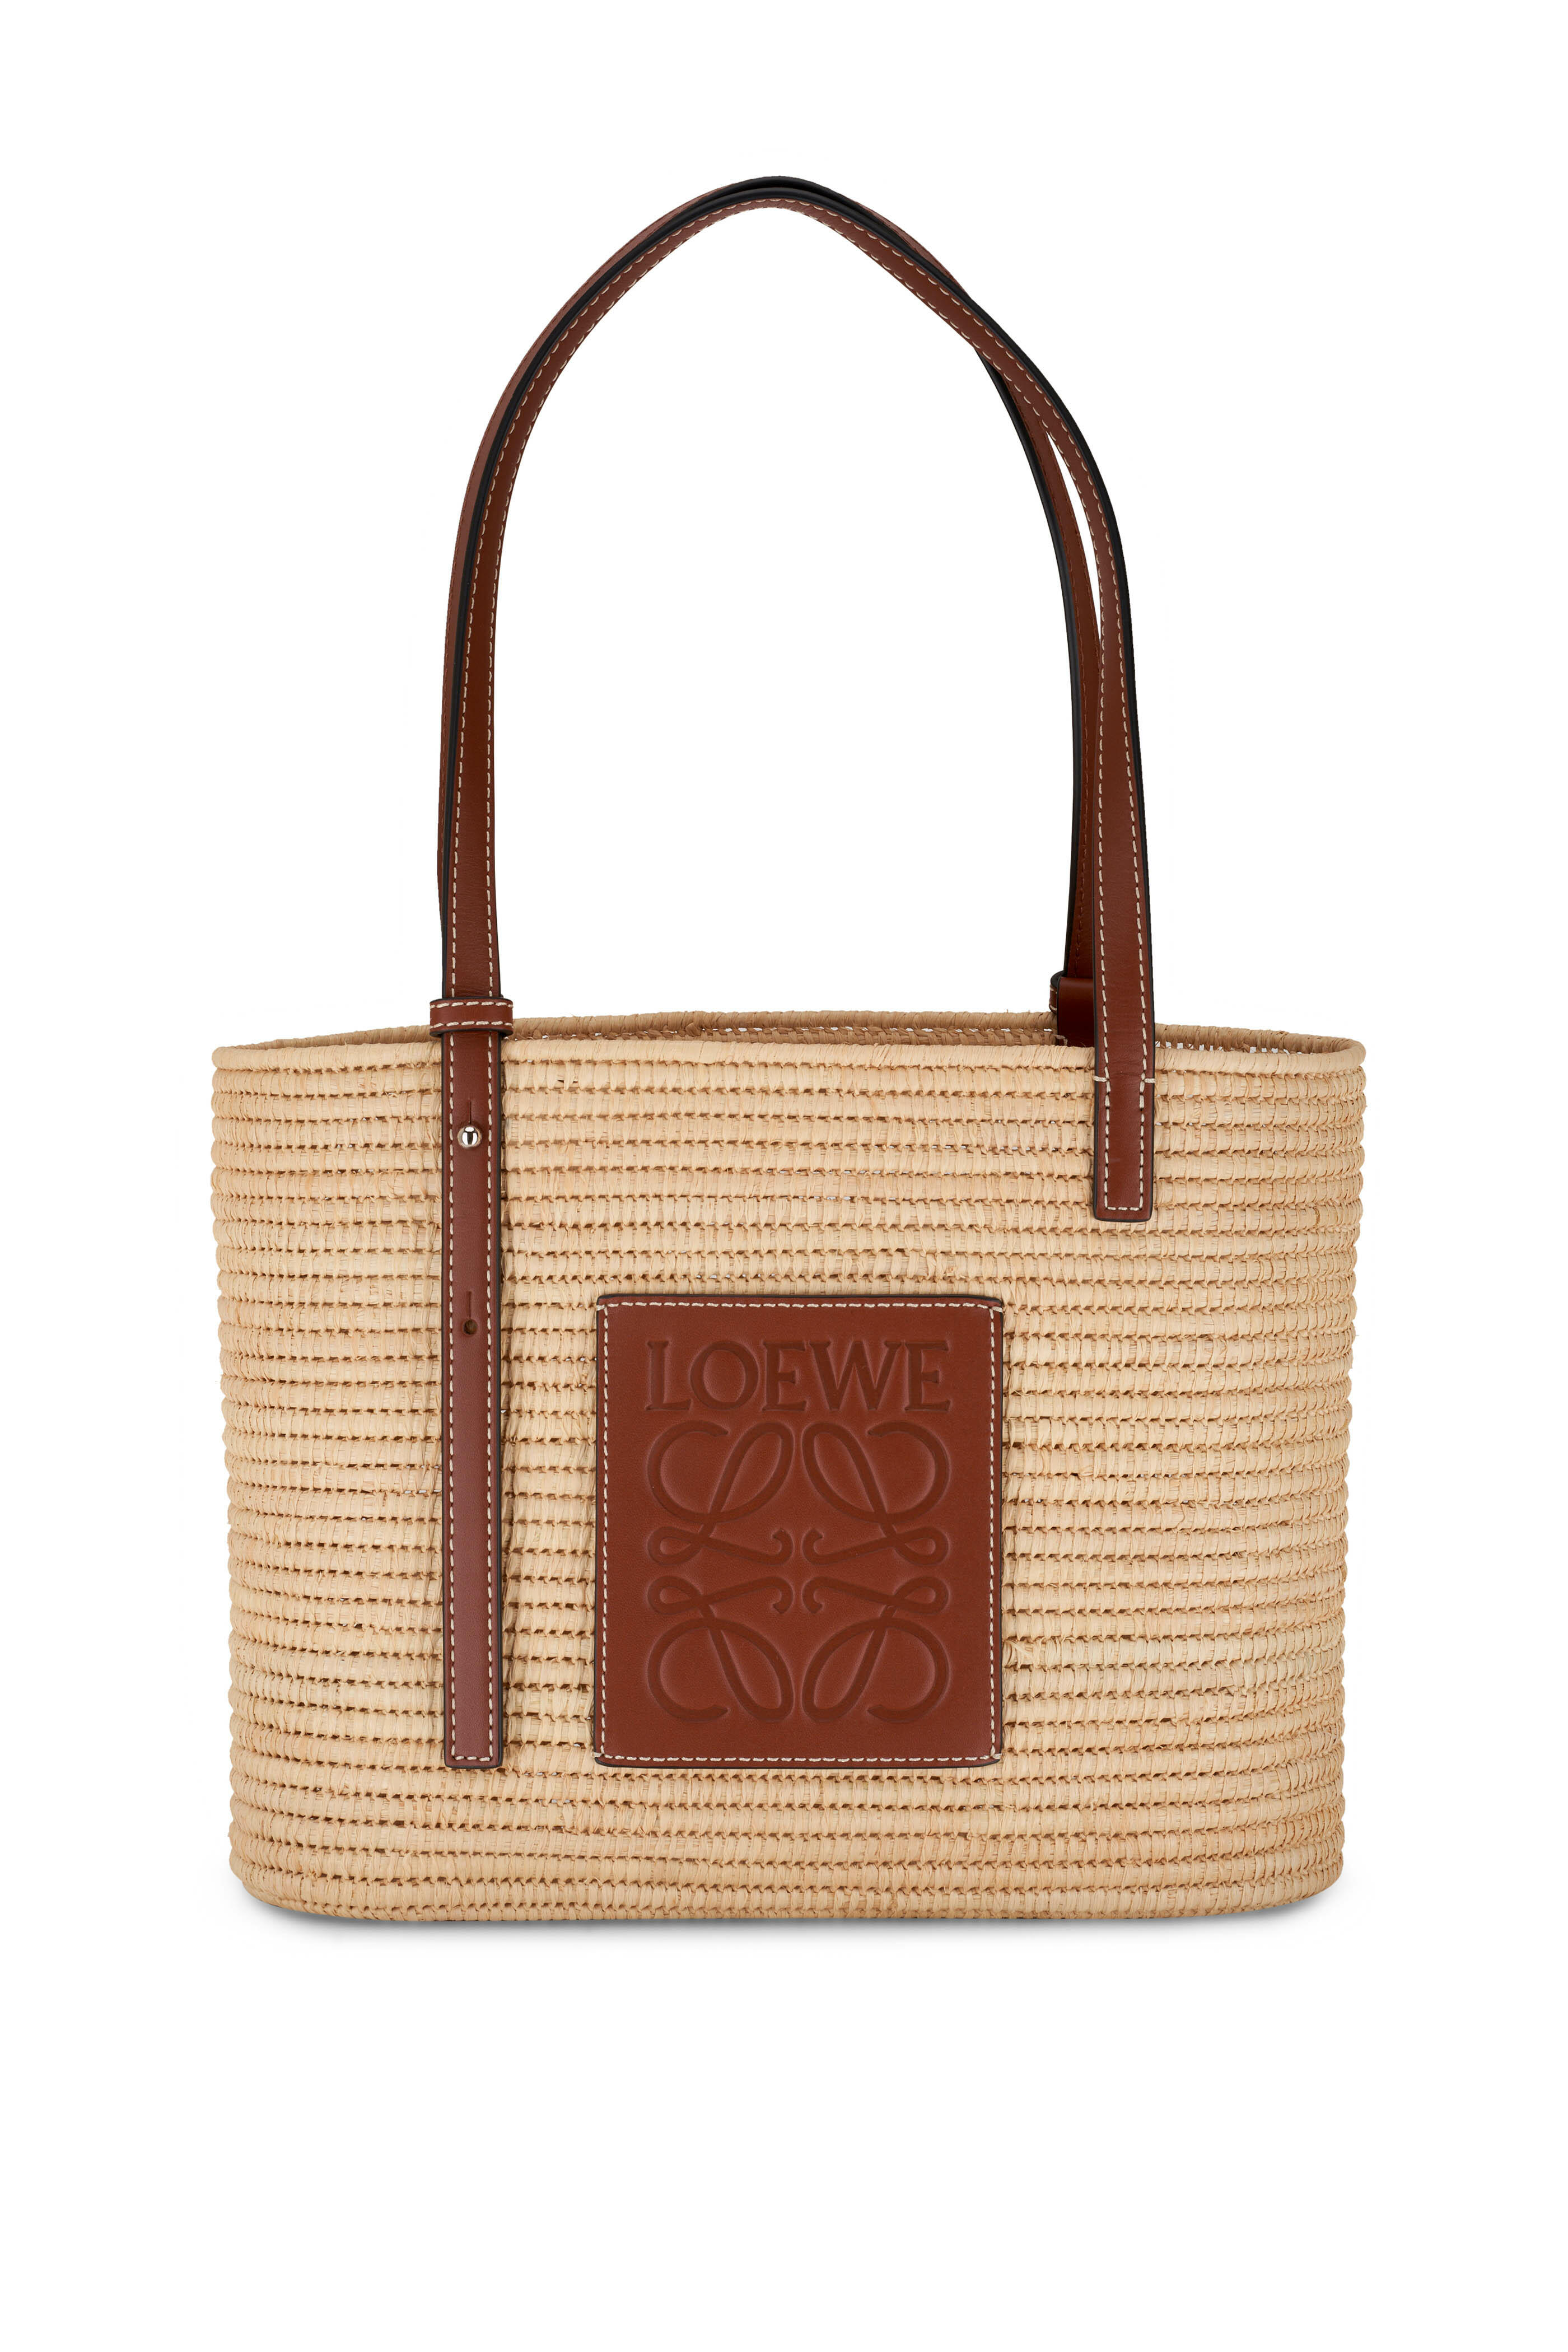 Loewe Large Woven Basket Bag Grained Calfskin In Brown